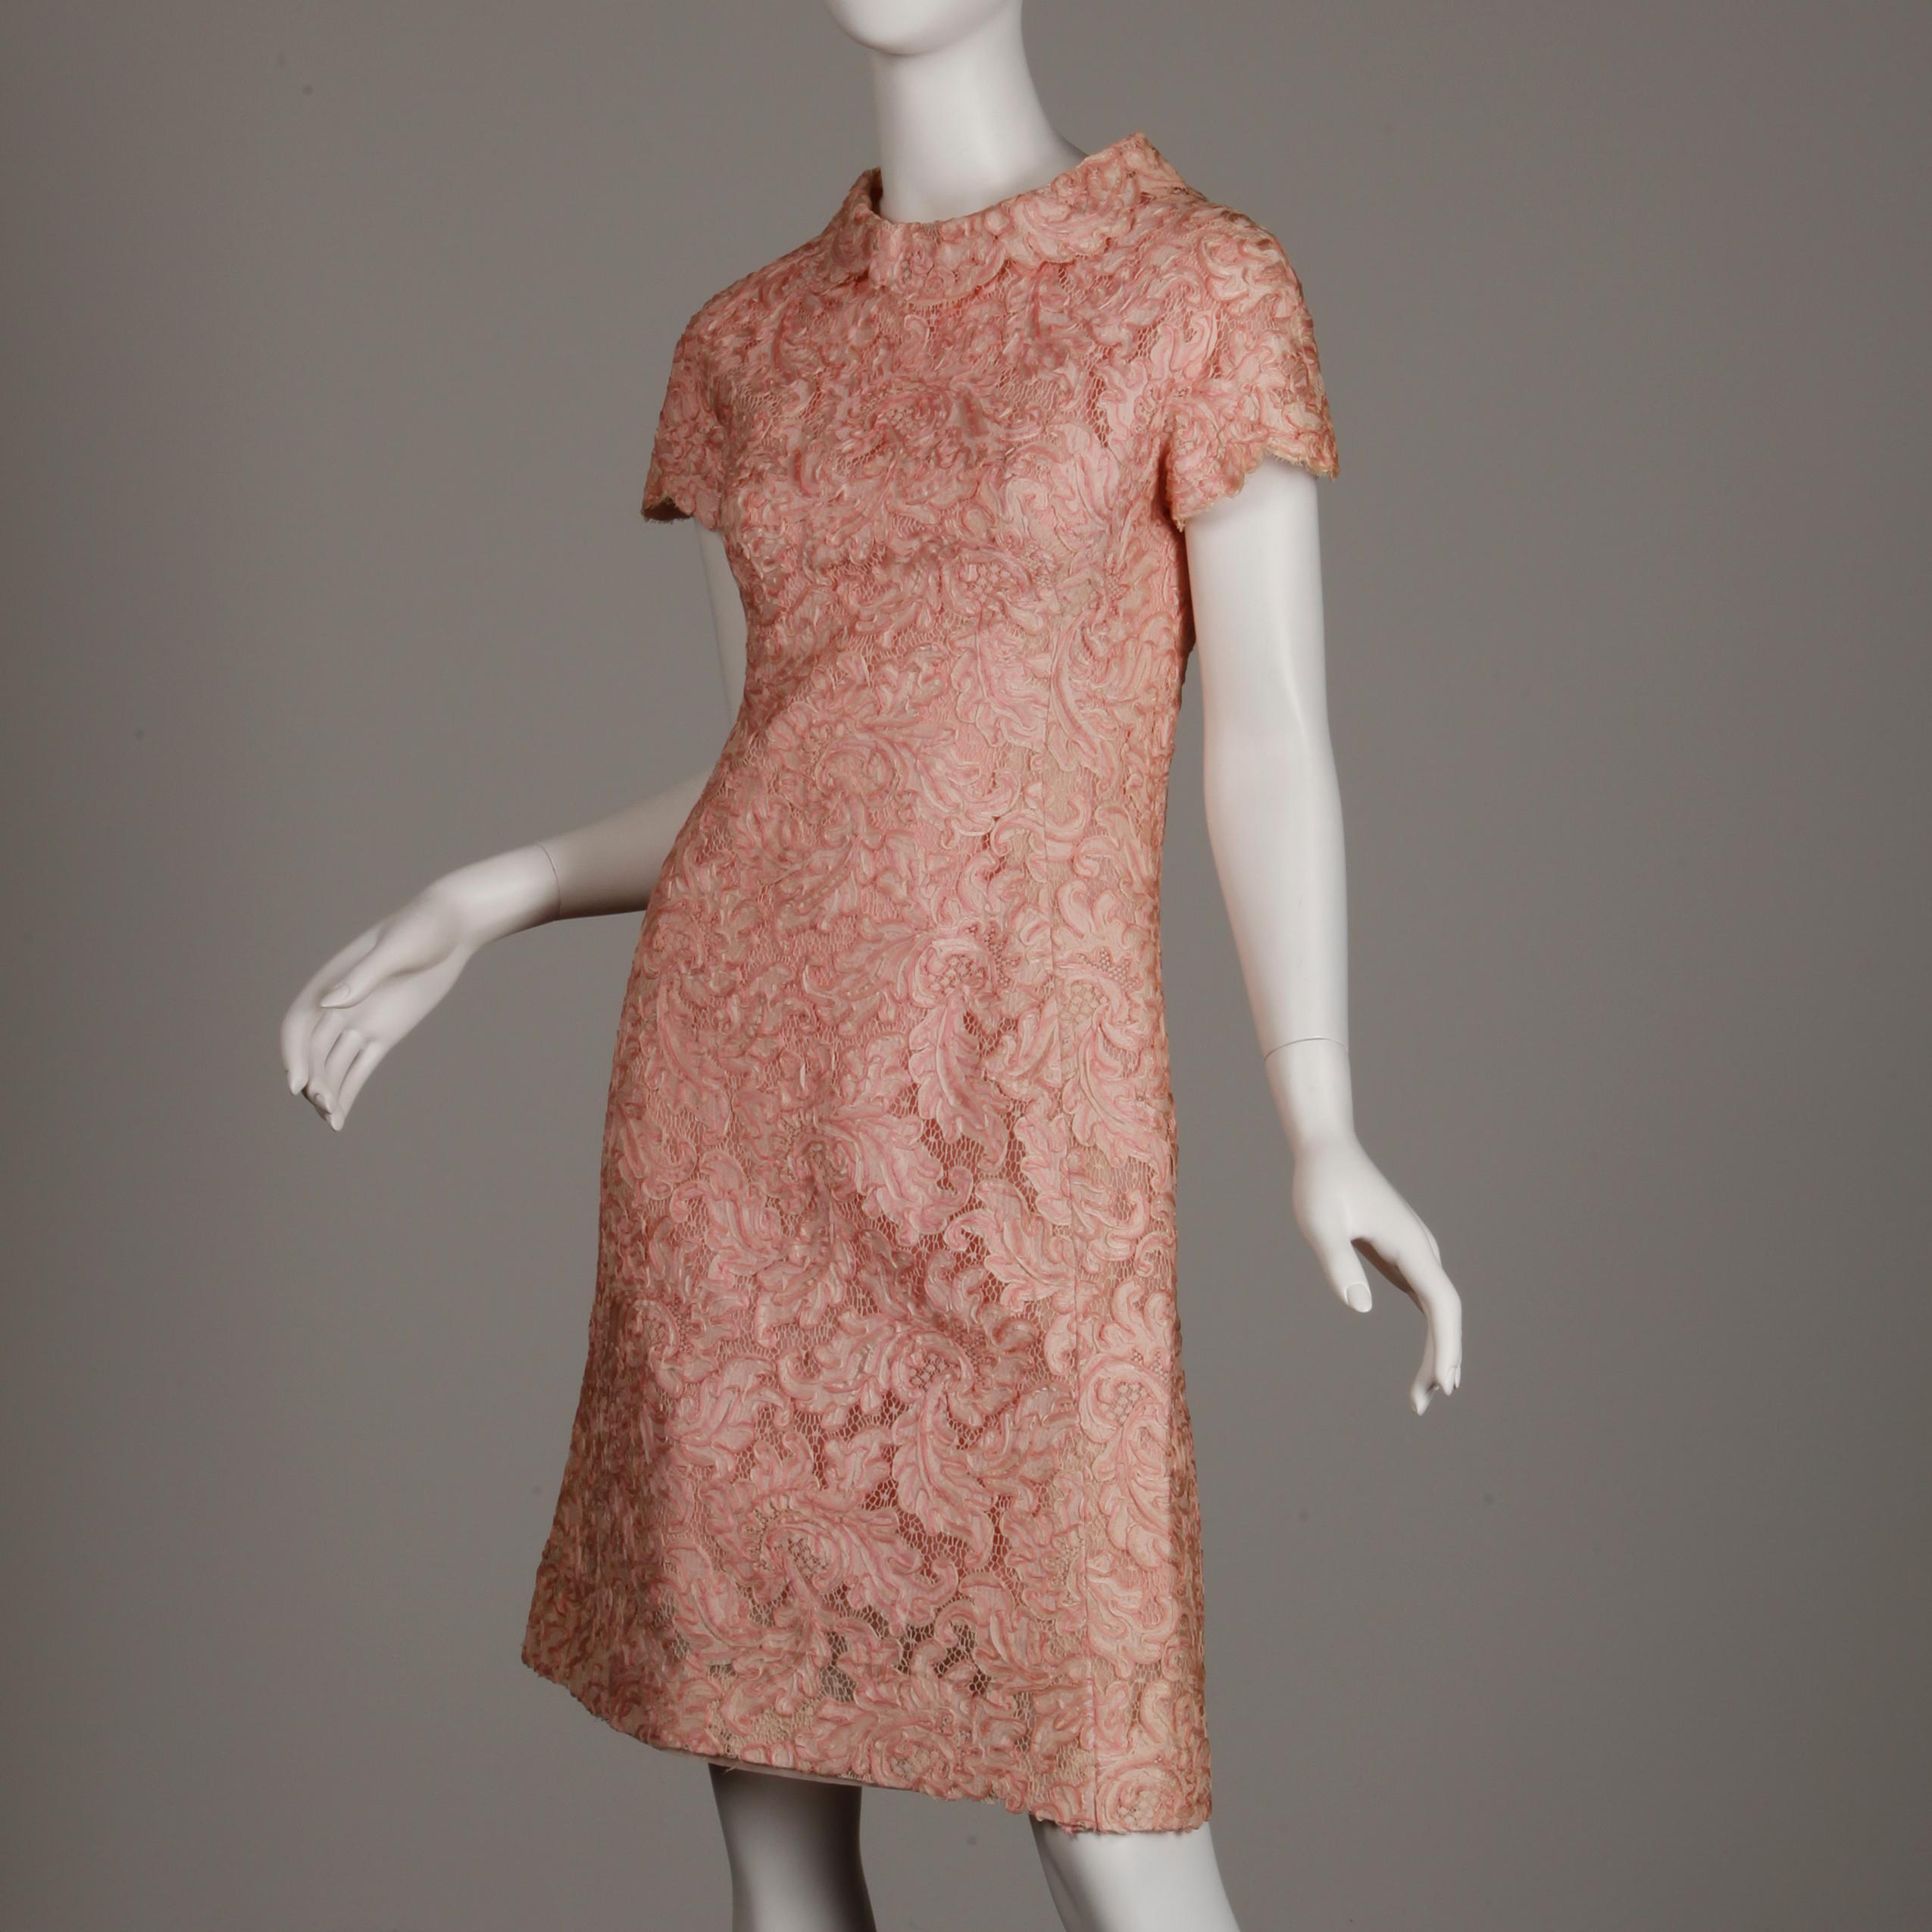 1960s Mollie Parnis Vintage Pink Soutache + Scalloped Lace Shift Dress Dress For Sale 1